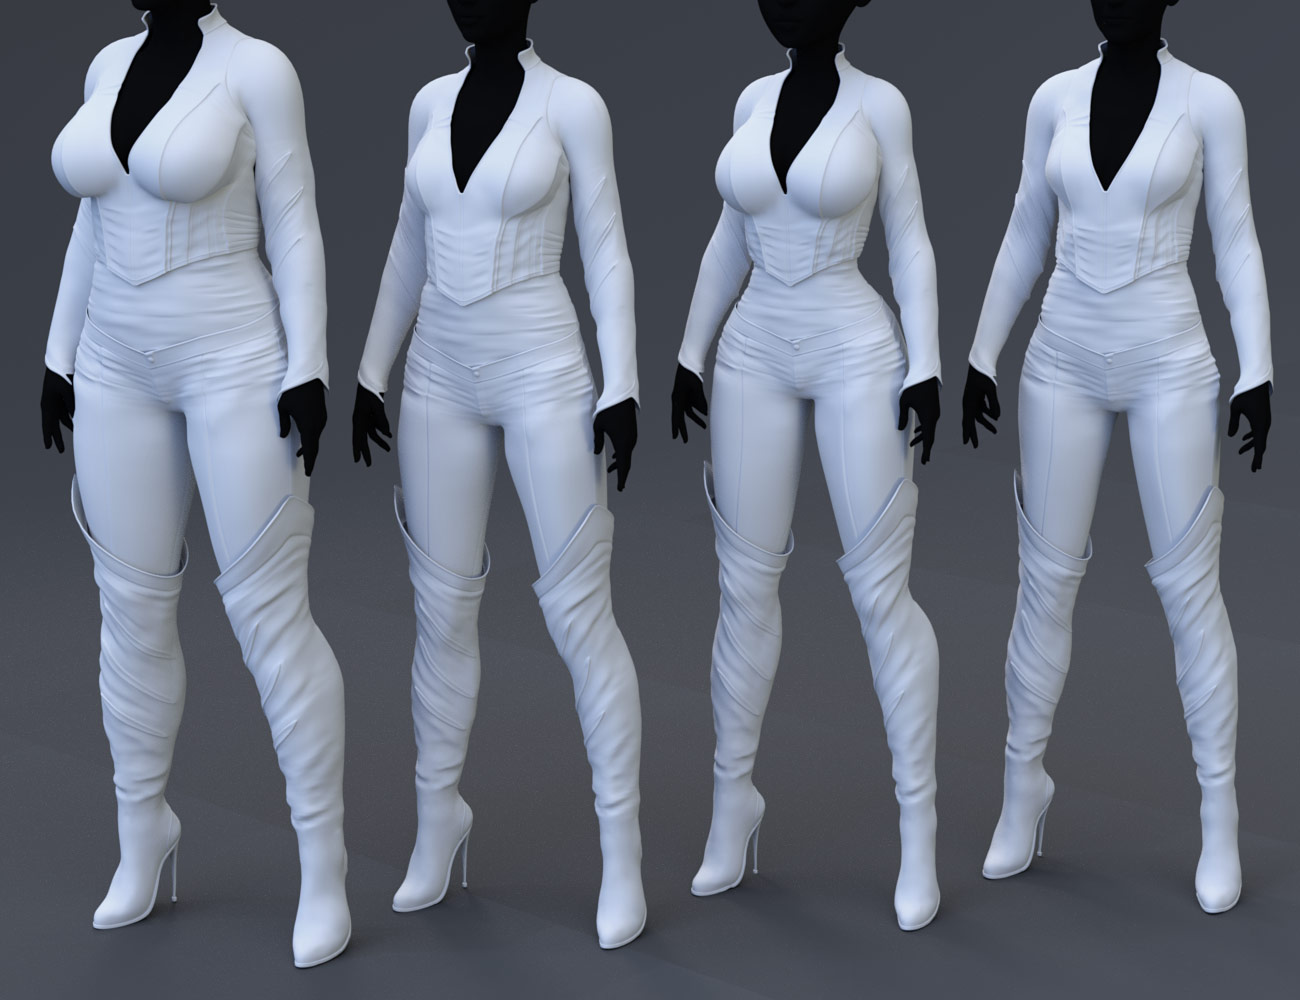 Draculita for Genesis 8 Females by: 4blueyes, 3D Models by Daz 3D